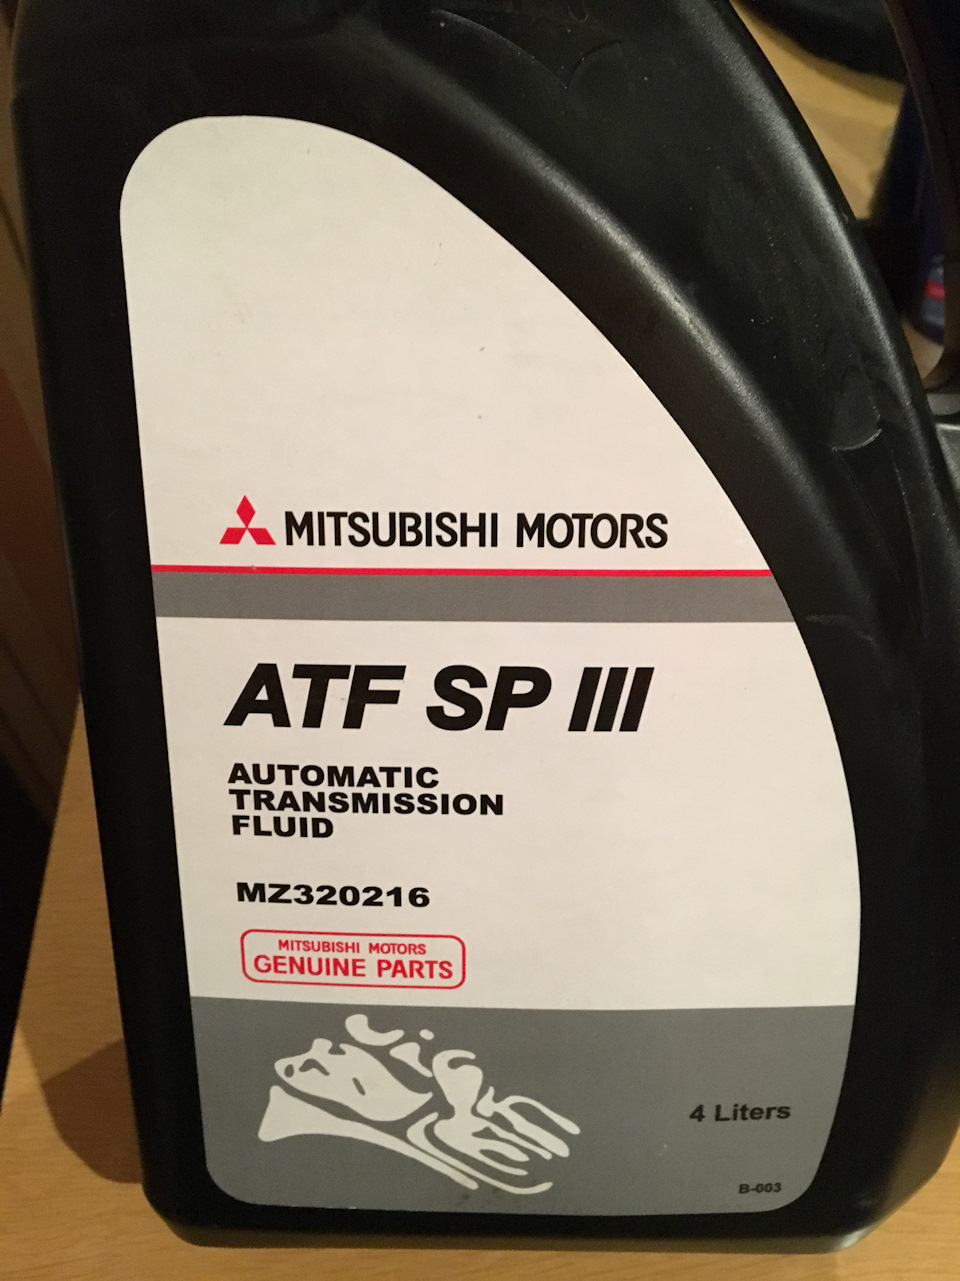 Масло трансмиссионное sp3 Mitsubishi. ATF sp3 Mitsubishi. Mitsubishi ATF SP-III 4л. Mz320216. Масло atf sp iii